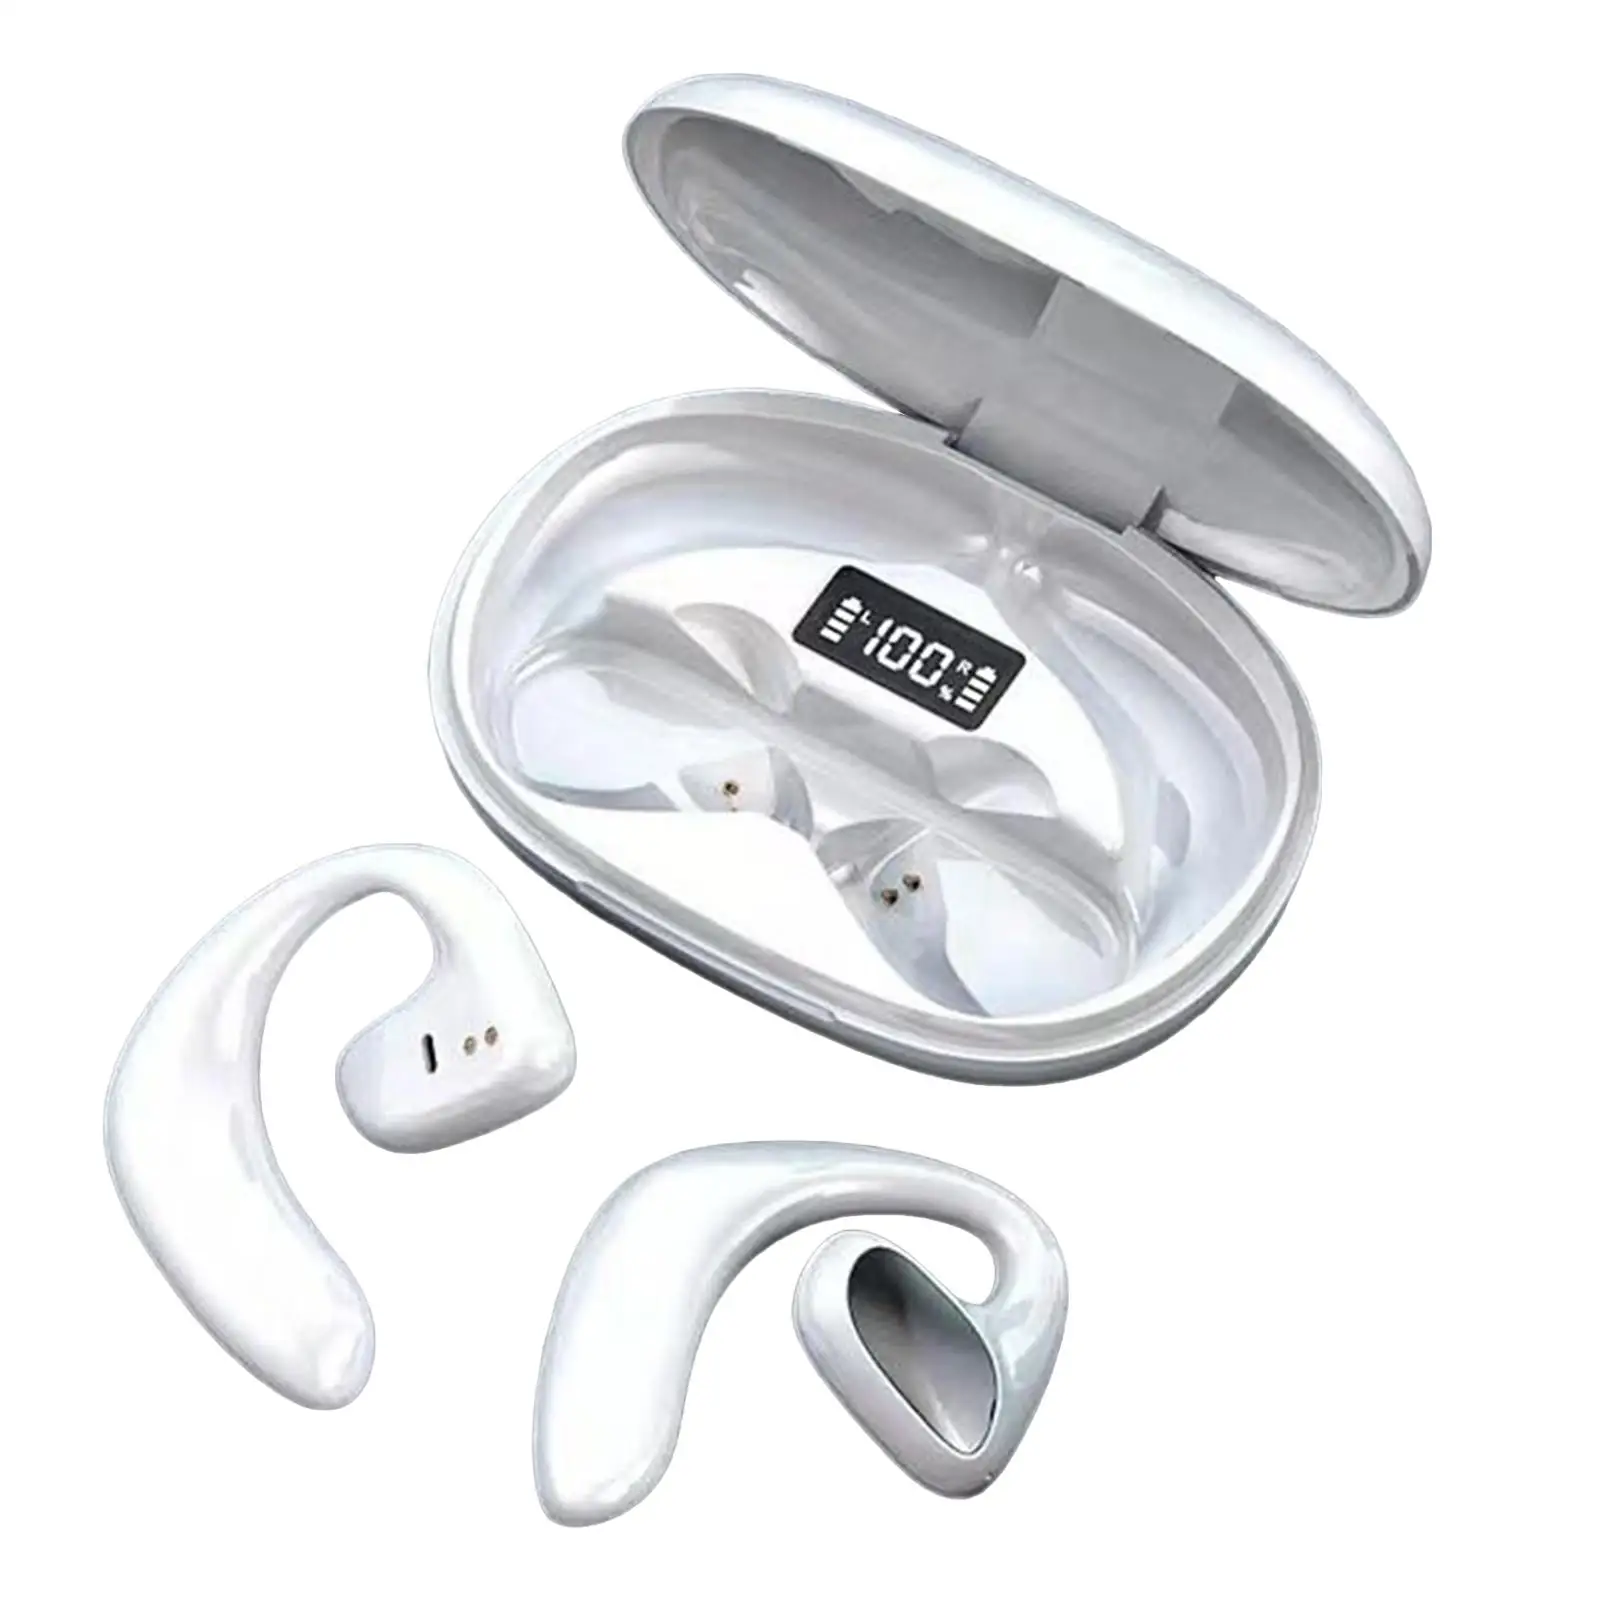 Air Conduction Bluetooth Headphones Stereo Earpiece Lightweight Ear Hook Wireless Headset Earphone for Running Hiking Workout